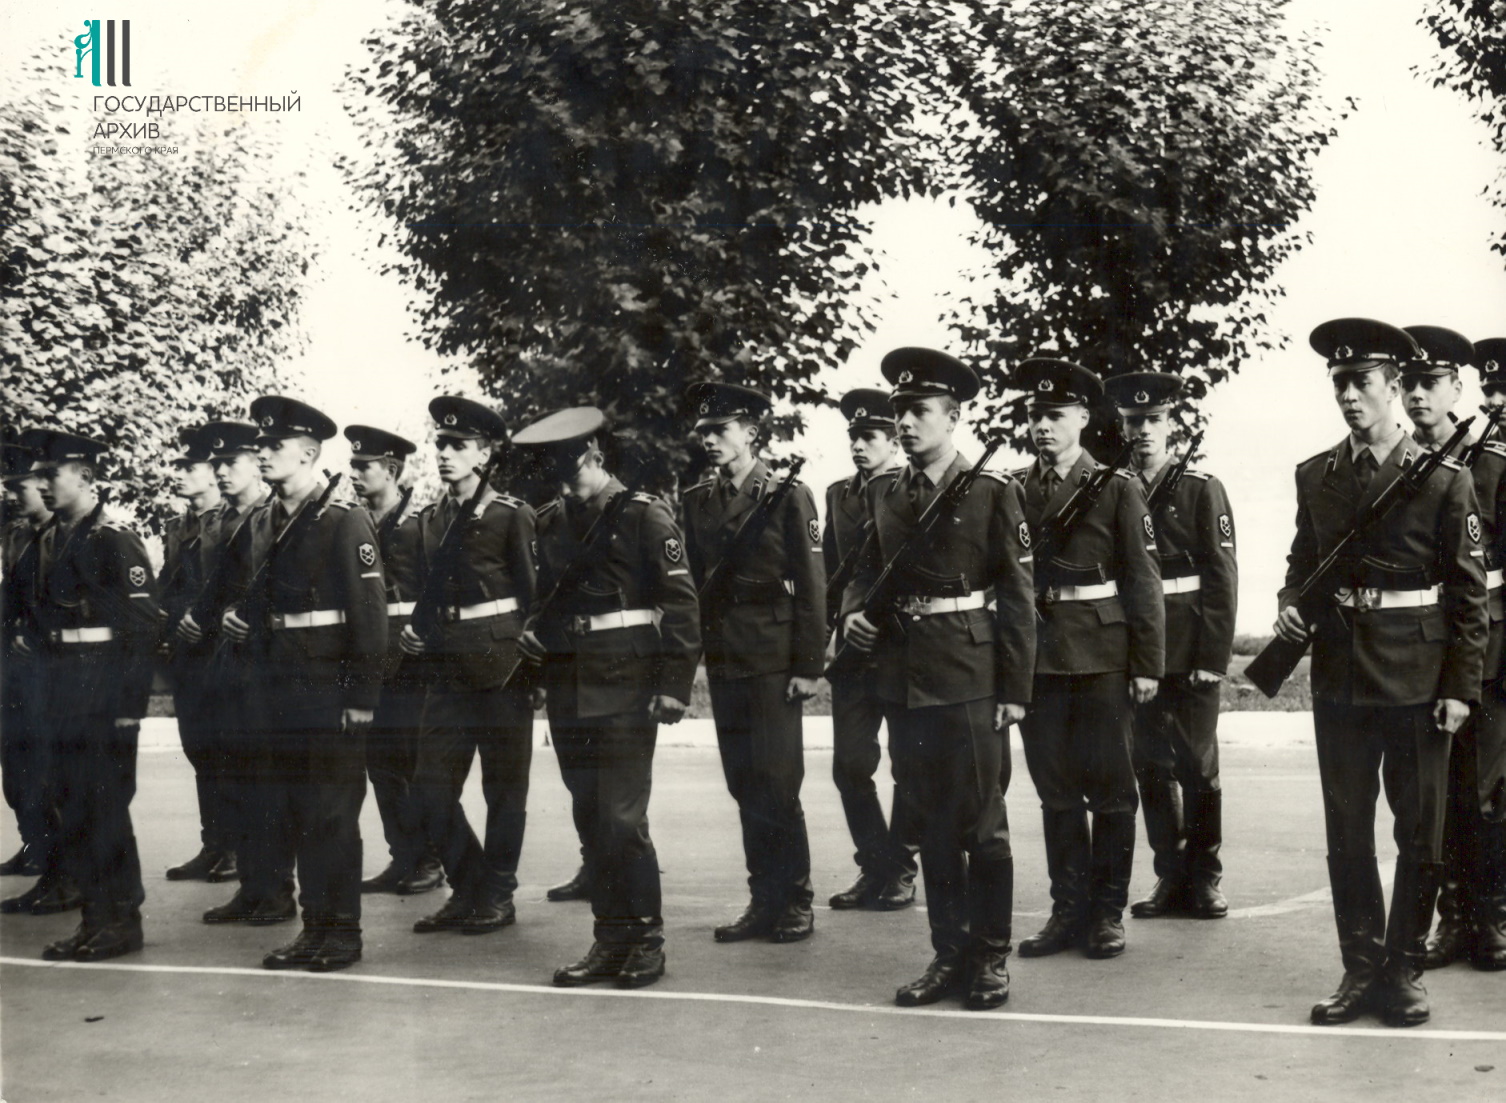 ФФ.39п_jpg.Оп.39п_jpg.Д.52. Группа солдат во время принятия присяги в воинской части Сокол. 1982. Пермь.jpg